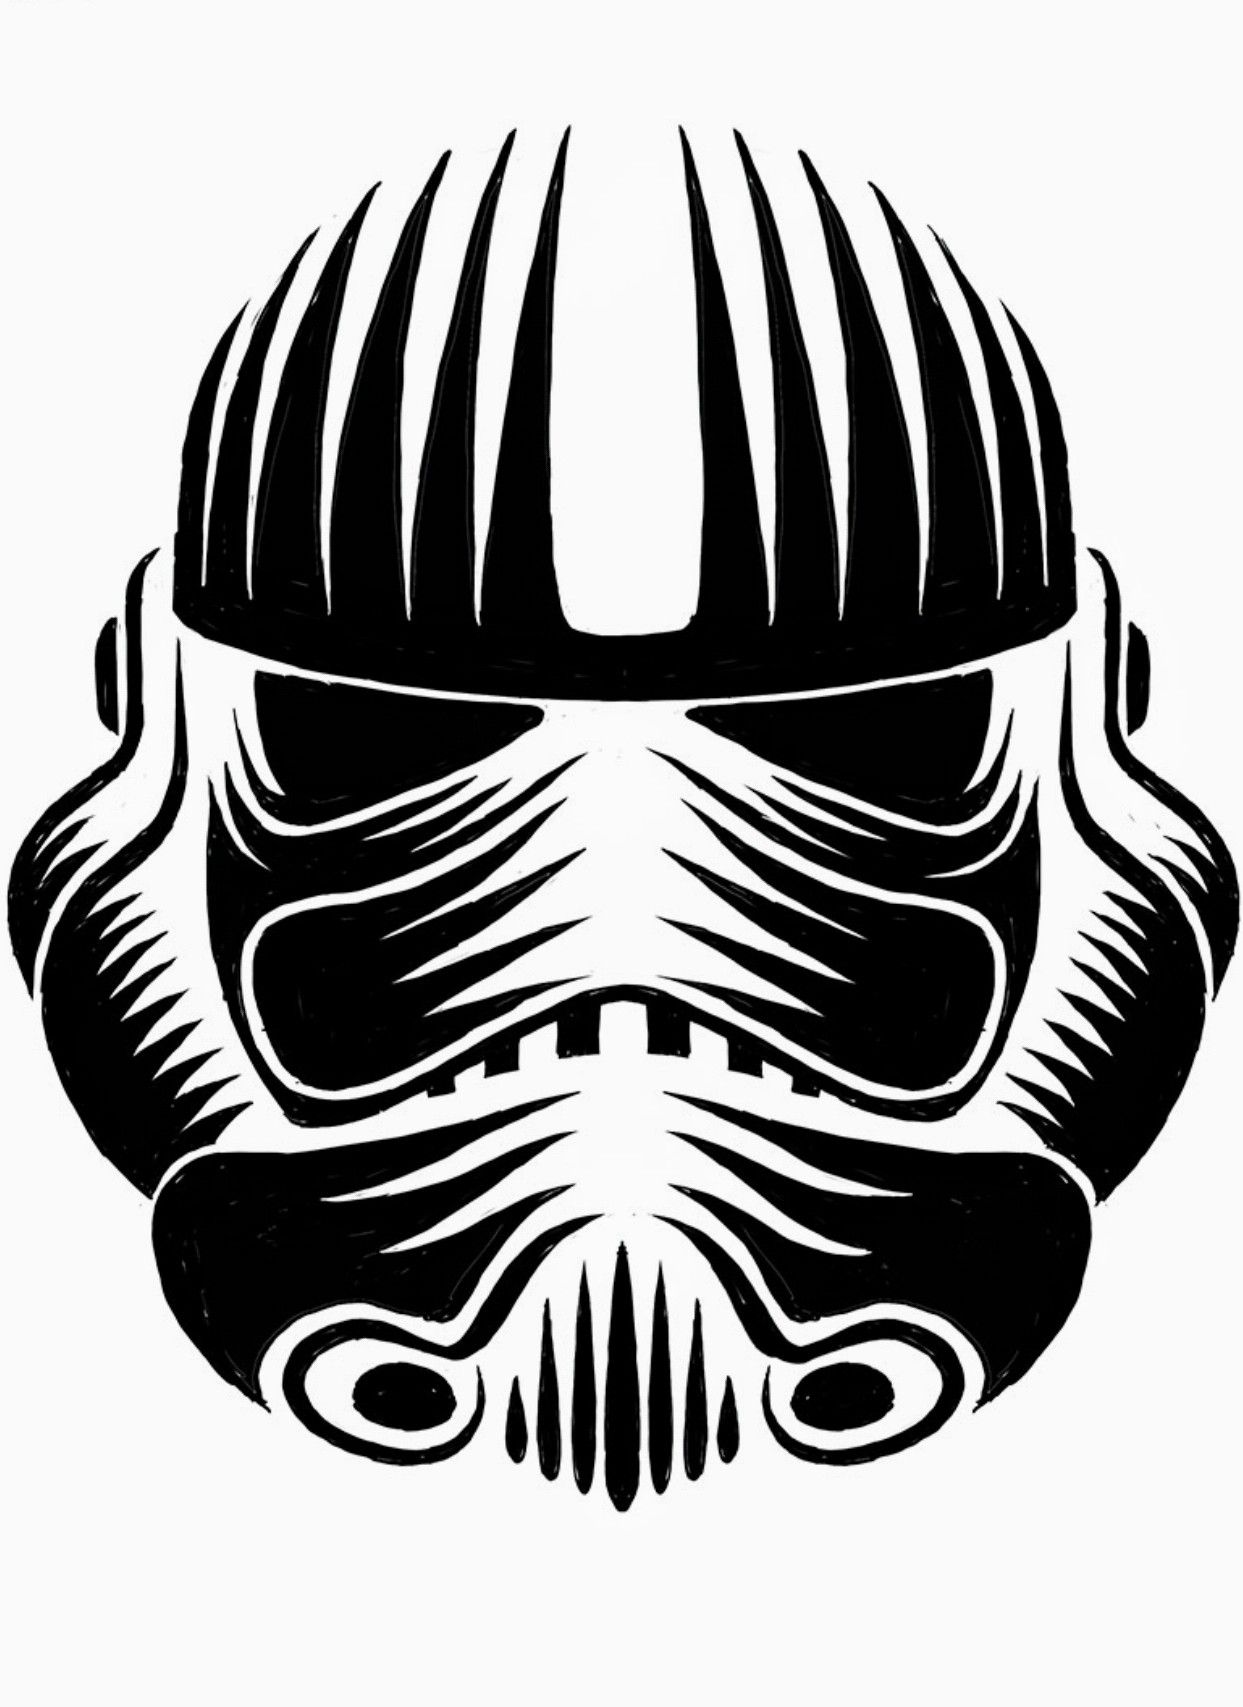 Stormtrooper Helmet Drawing